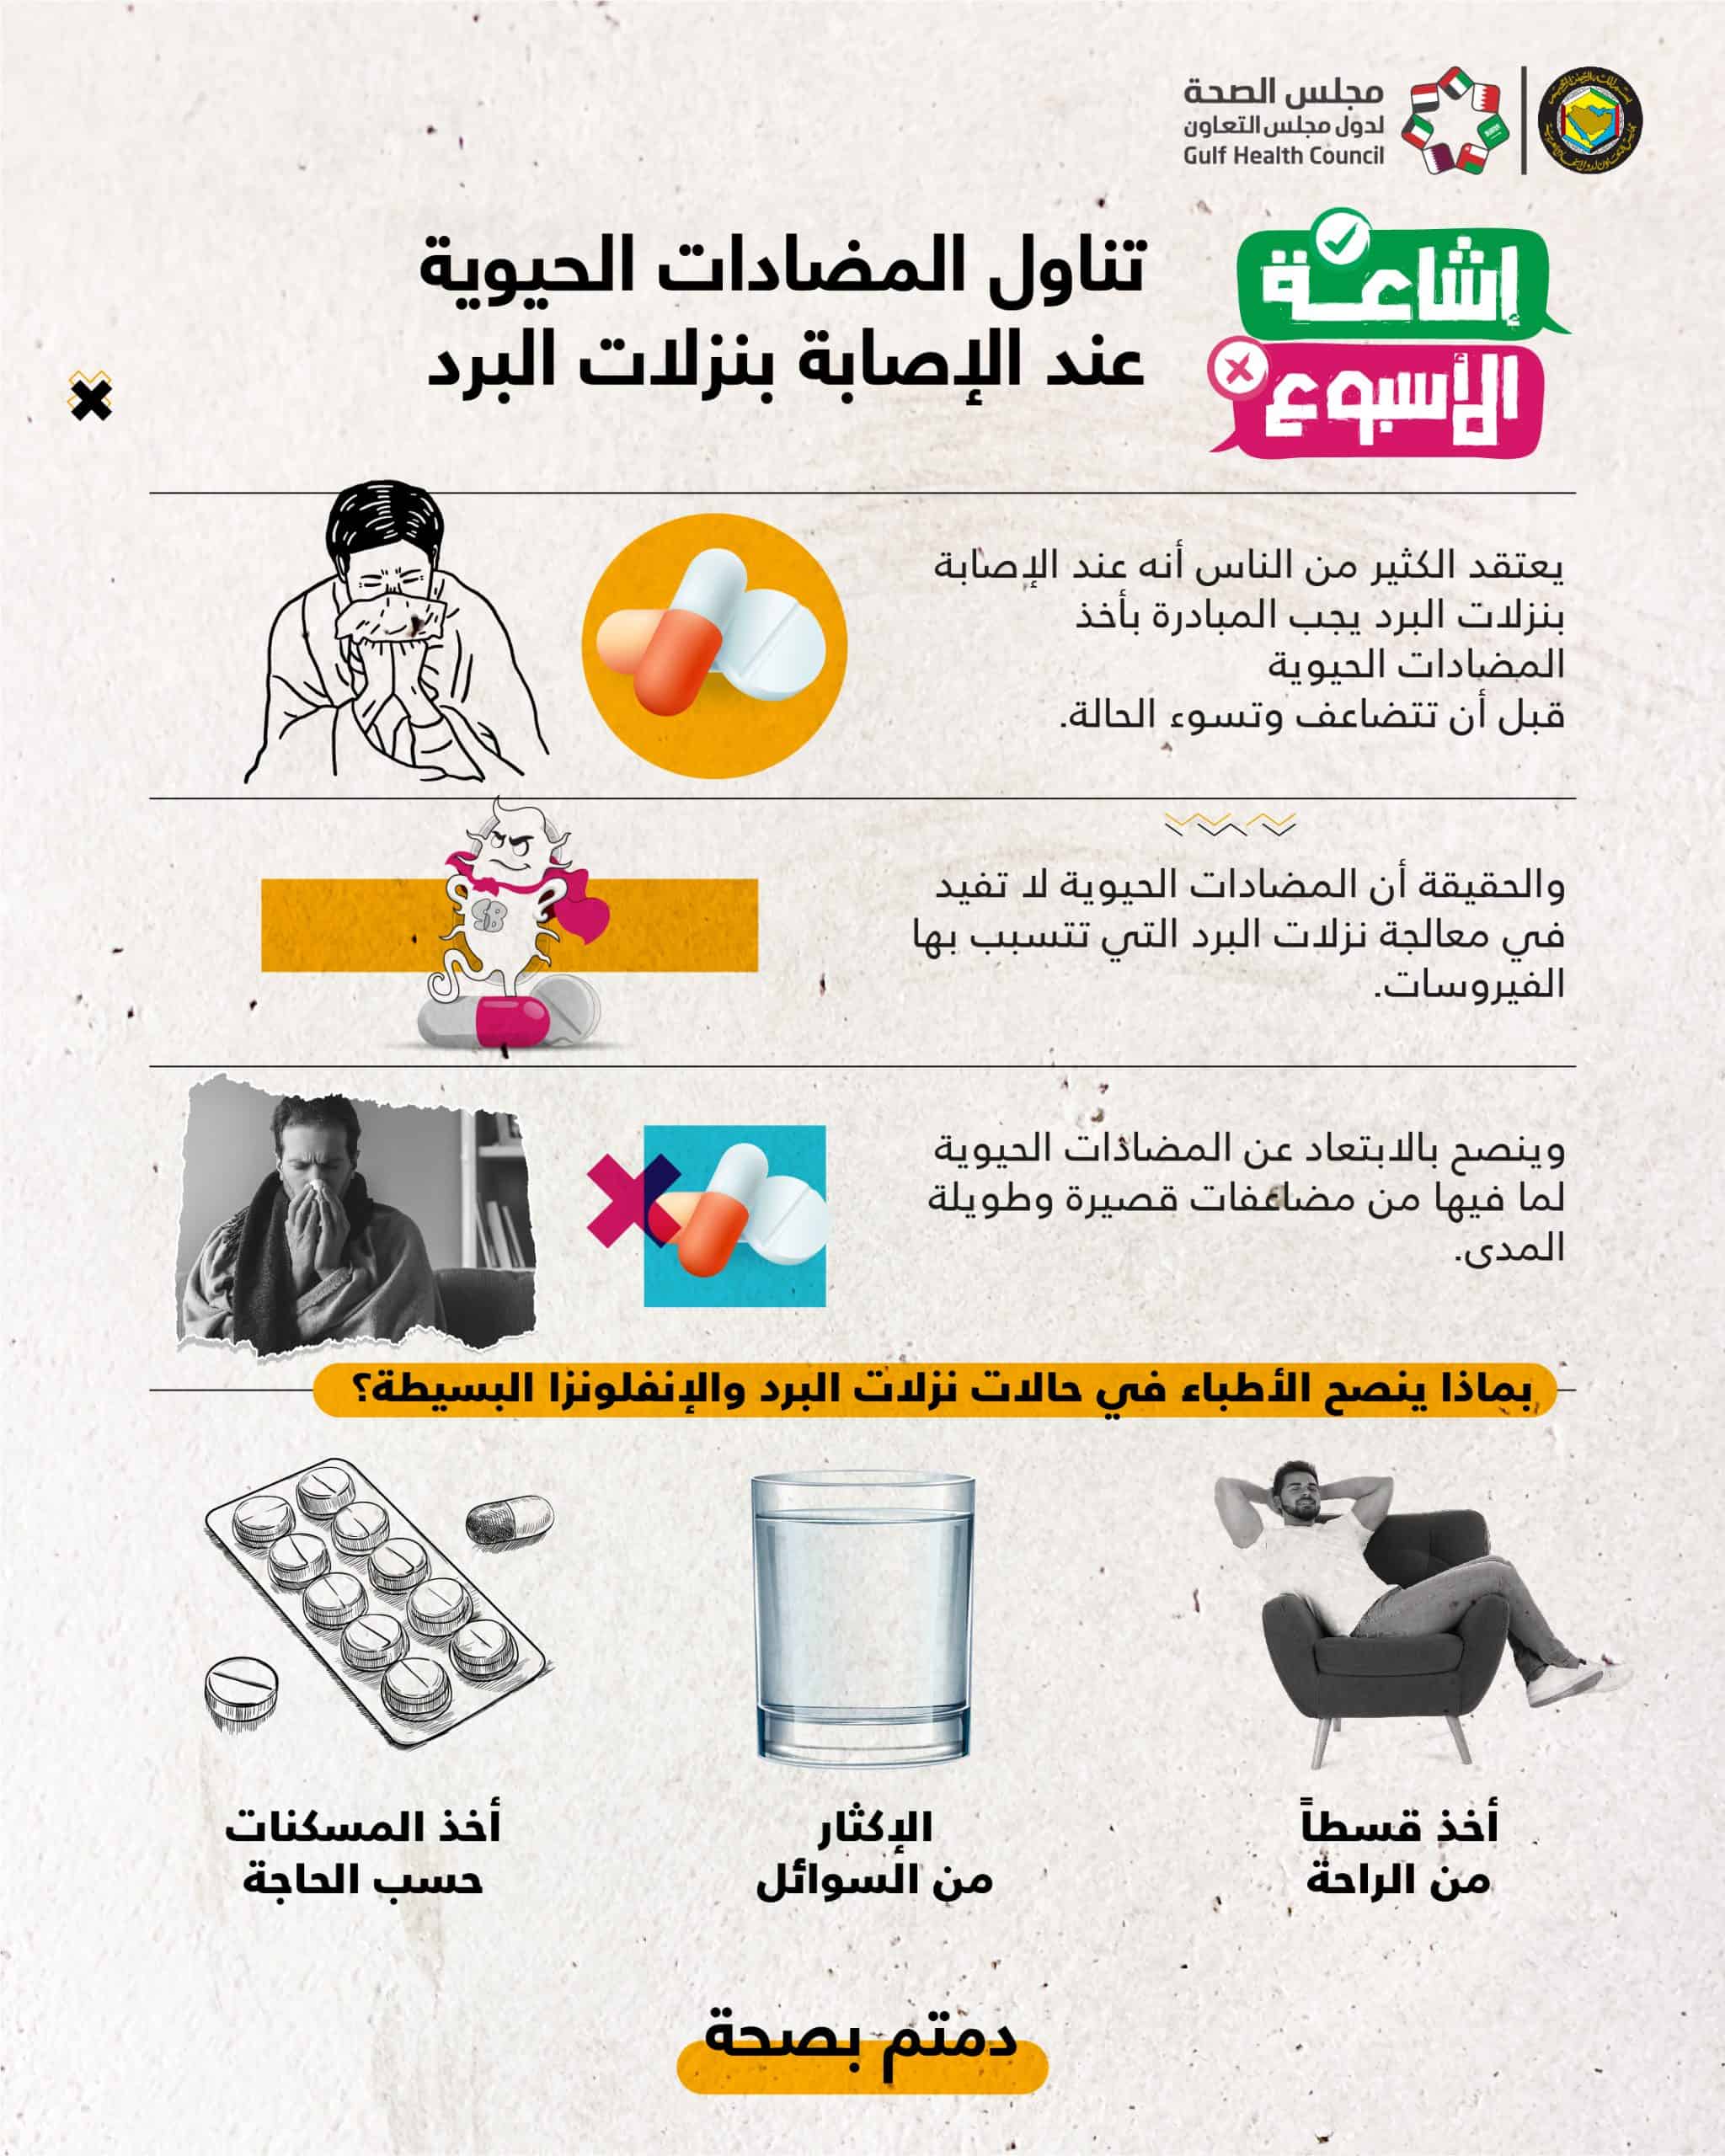 الصحة الخليجي: تناول المضادات الحيوية لا تفيد مع نزلات البرد التي تسببها الفيروسات